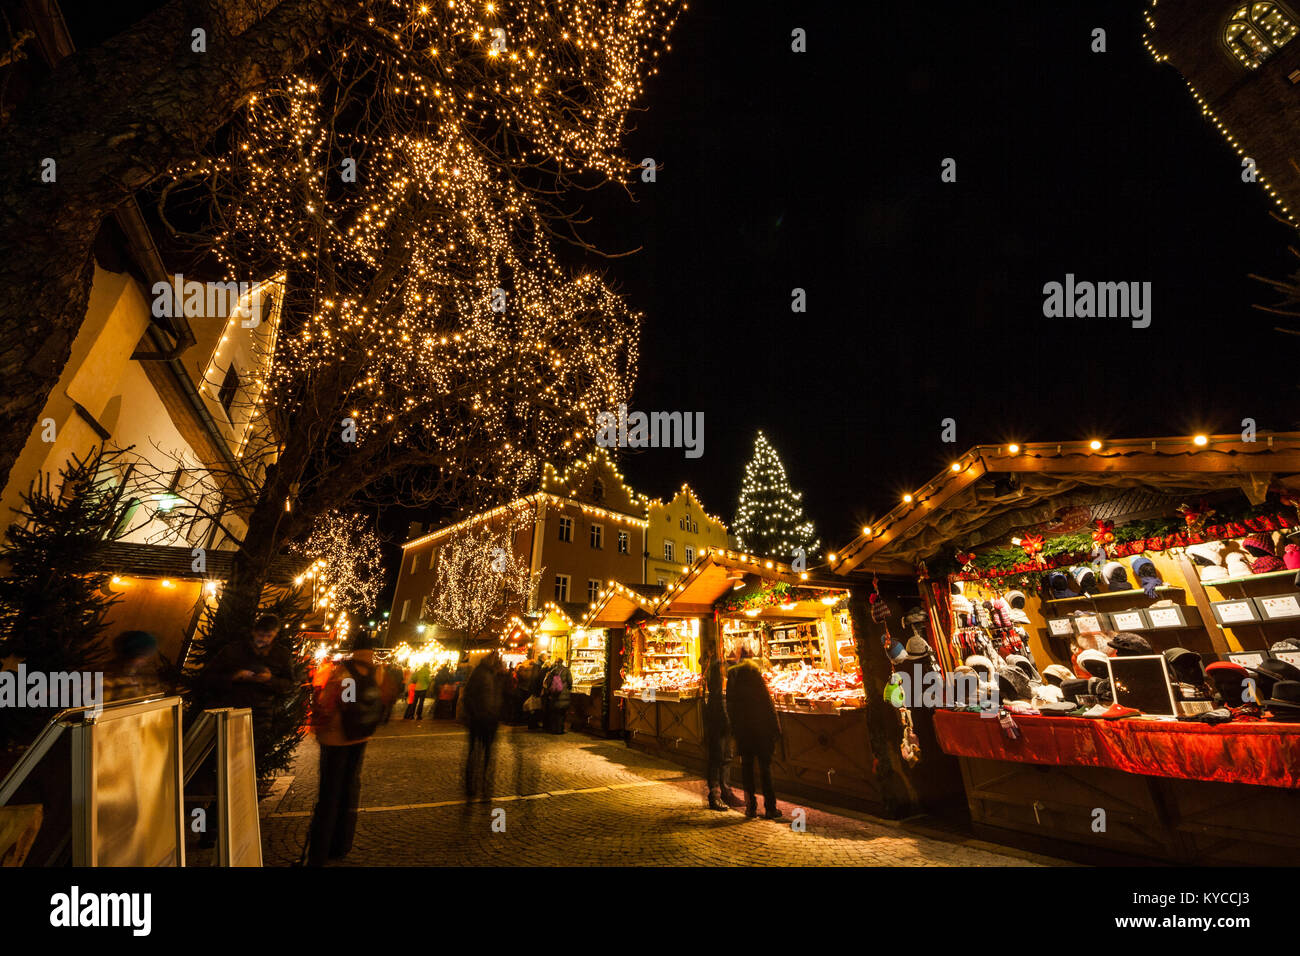 Christmas Market, Vipiteno, Sterzing, Bolzano, Trentino Alto Adige, Italy Stock Photo